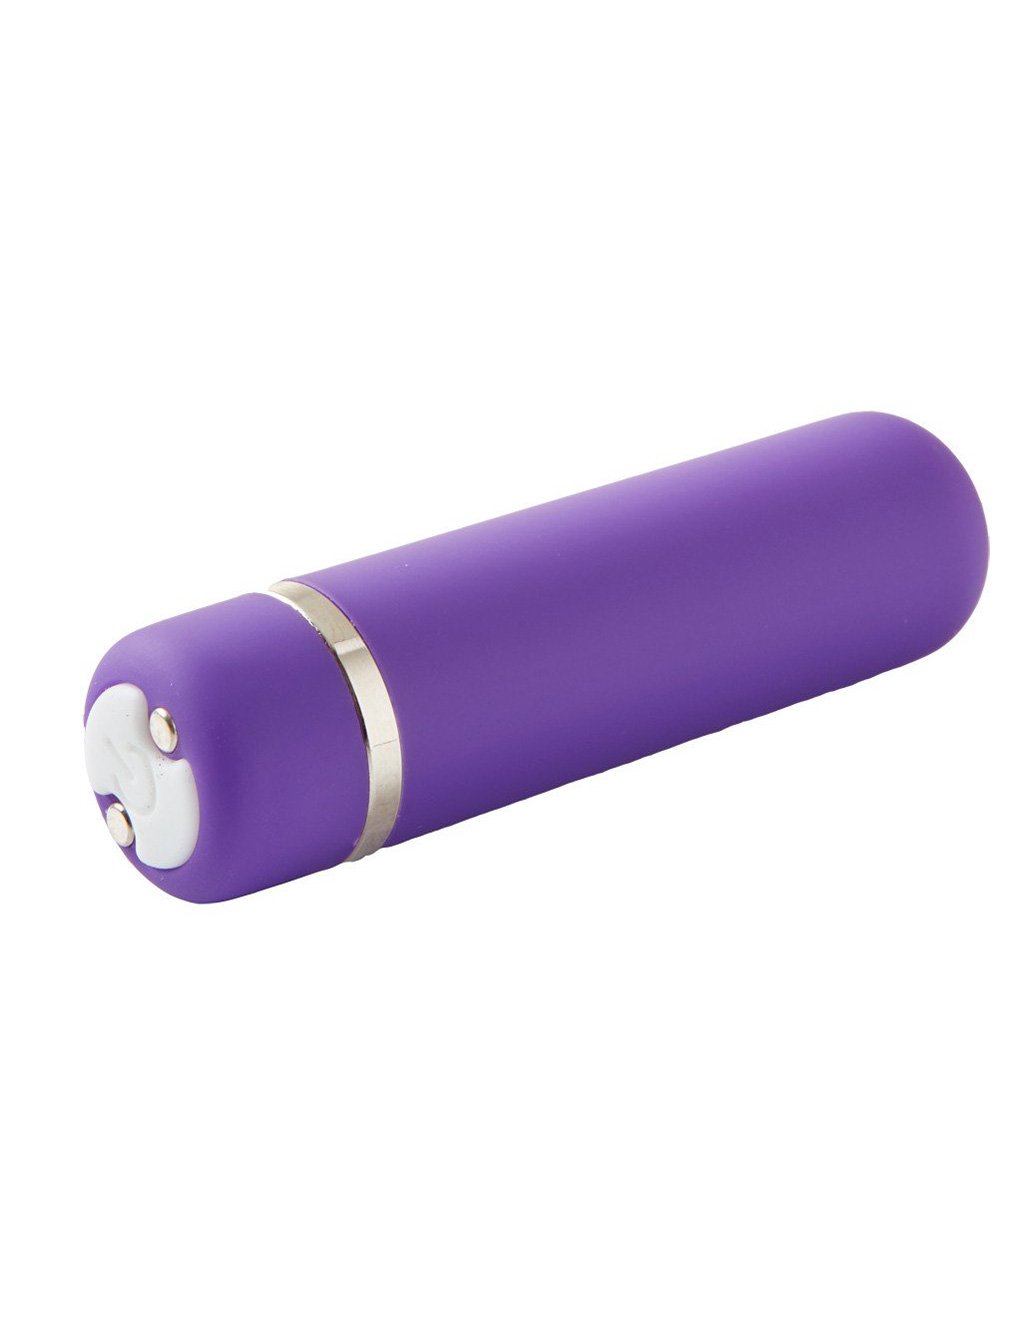 Nu Sensuelle Joie 15 Function Bullet- Purple- Side